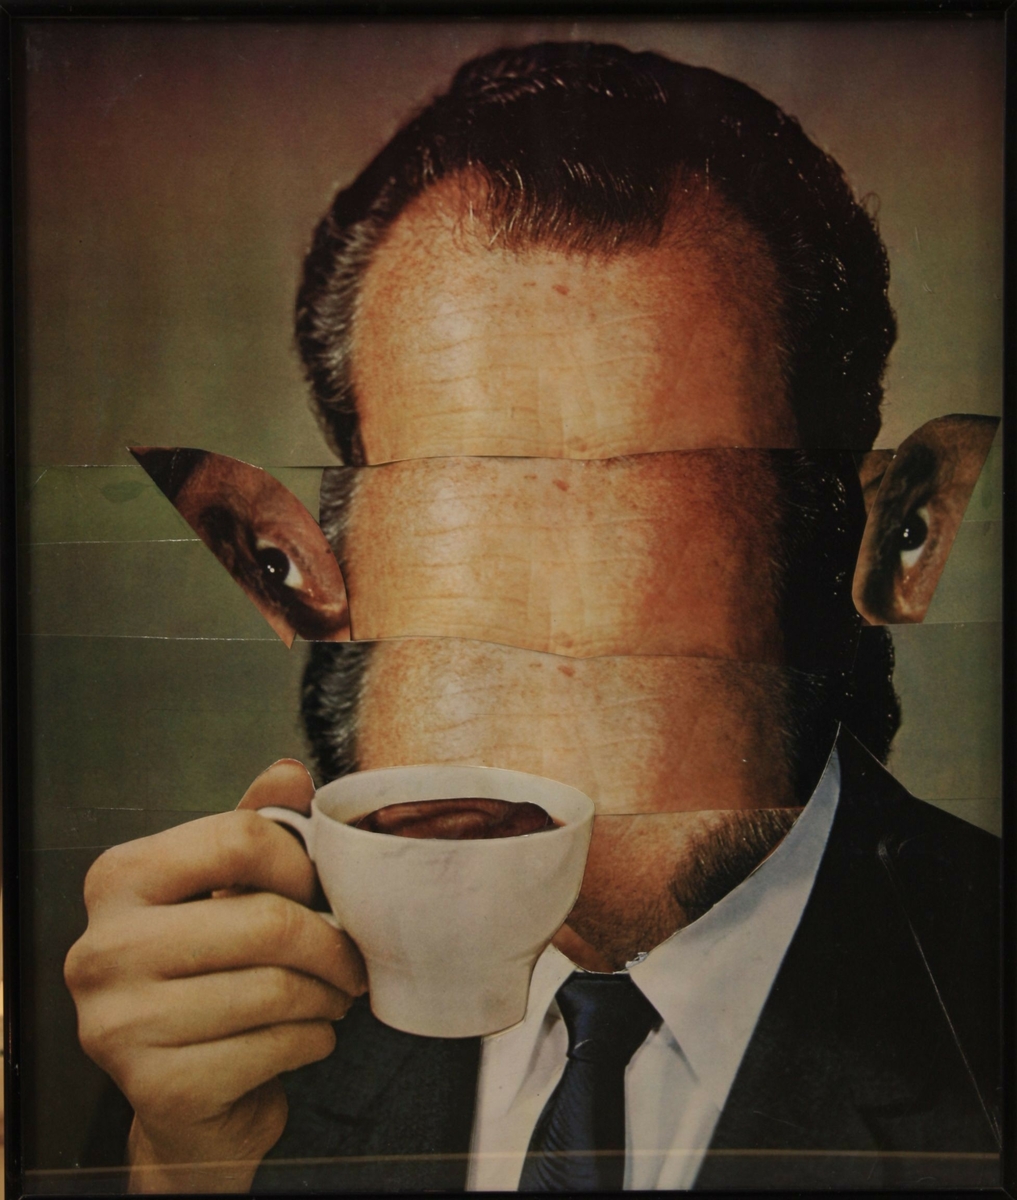 Nixon visions [Fotografi]